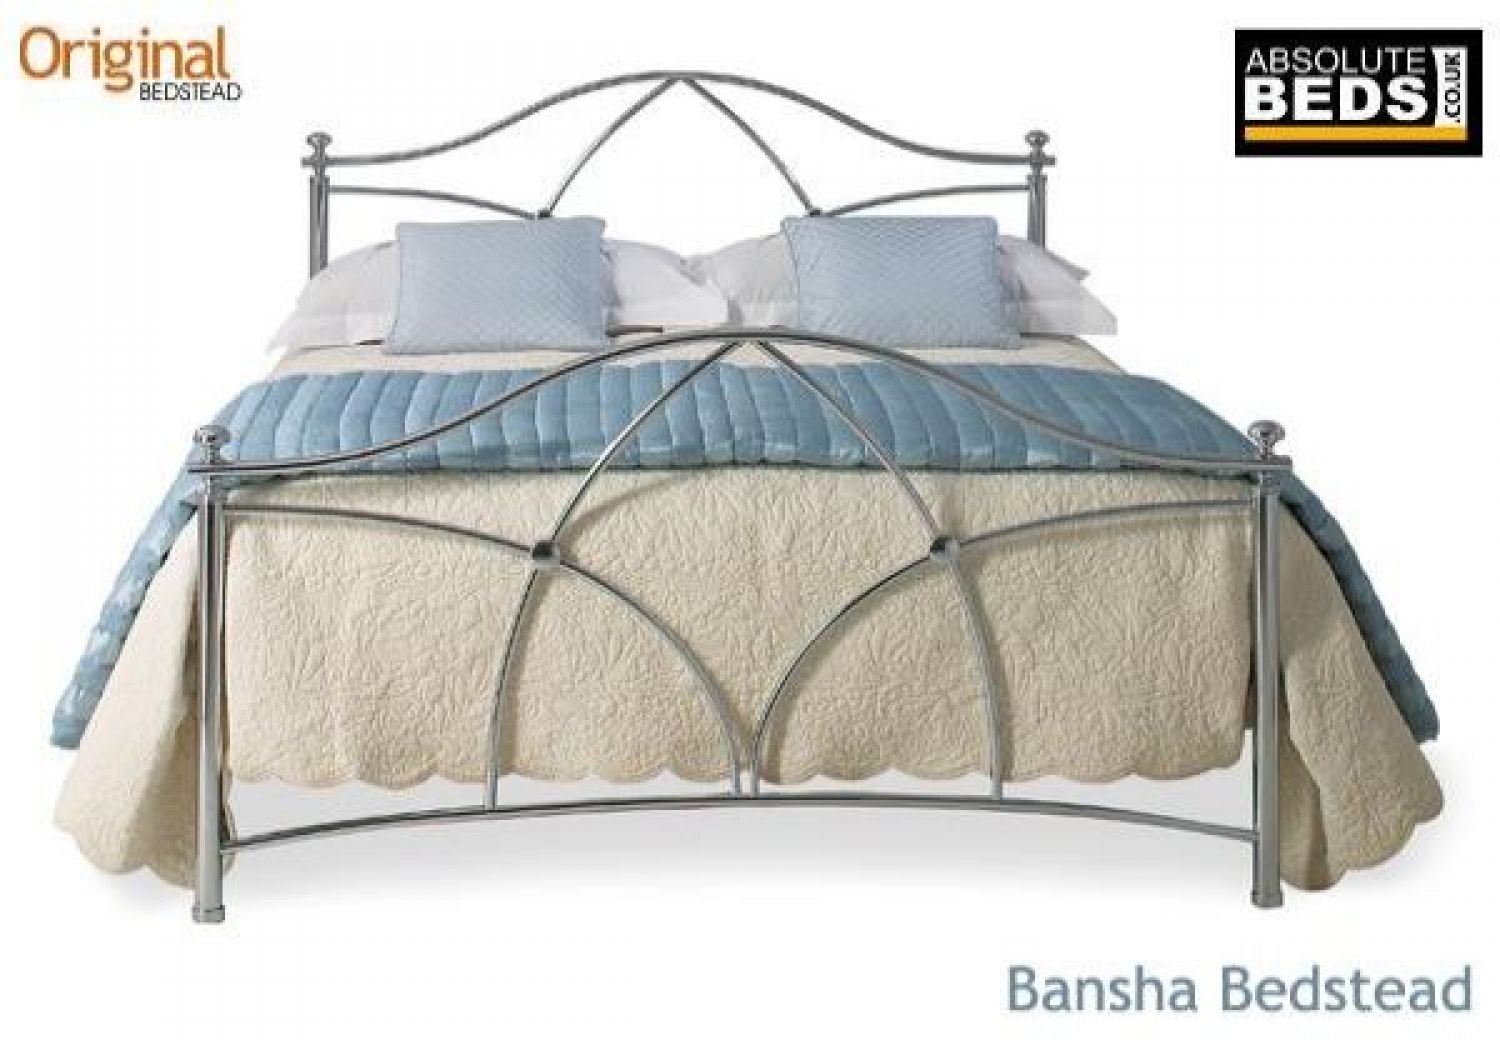 original bedstead bansha metal bed frame image